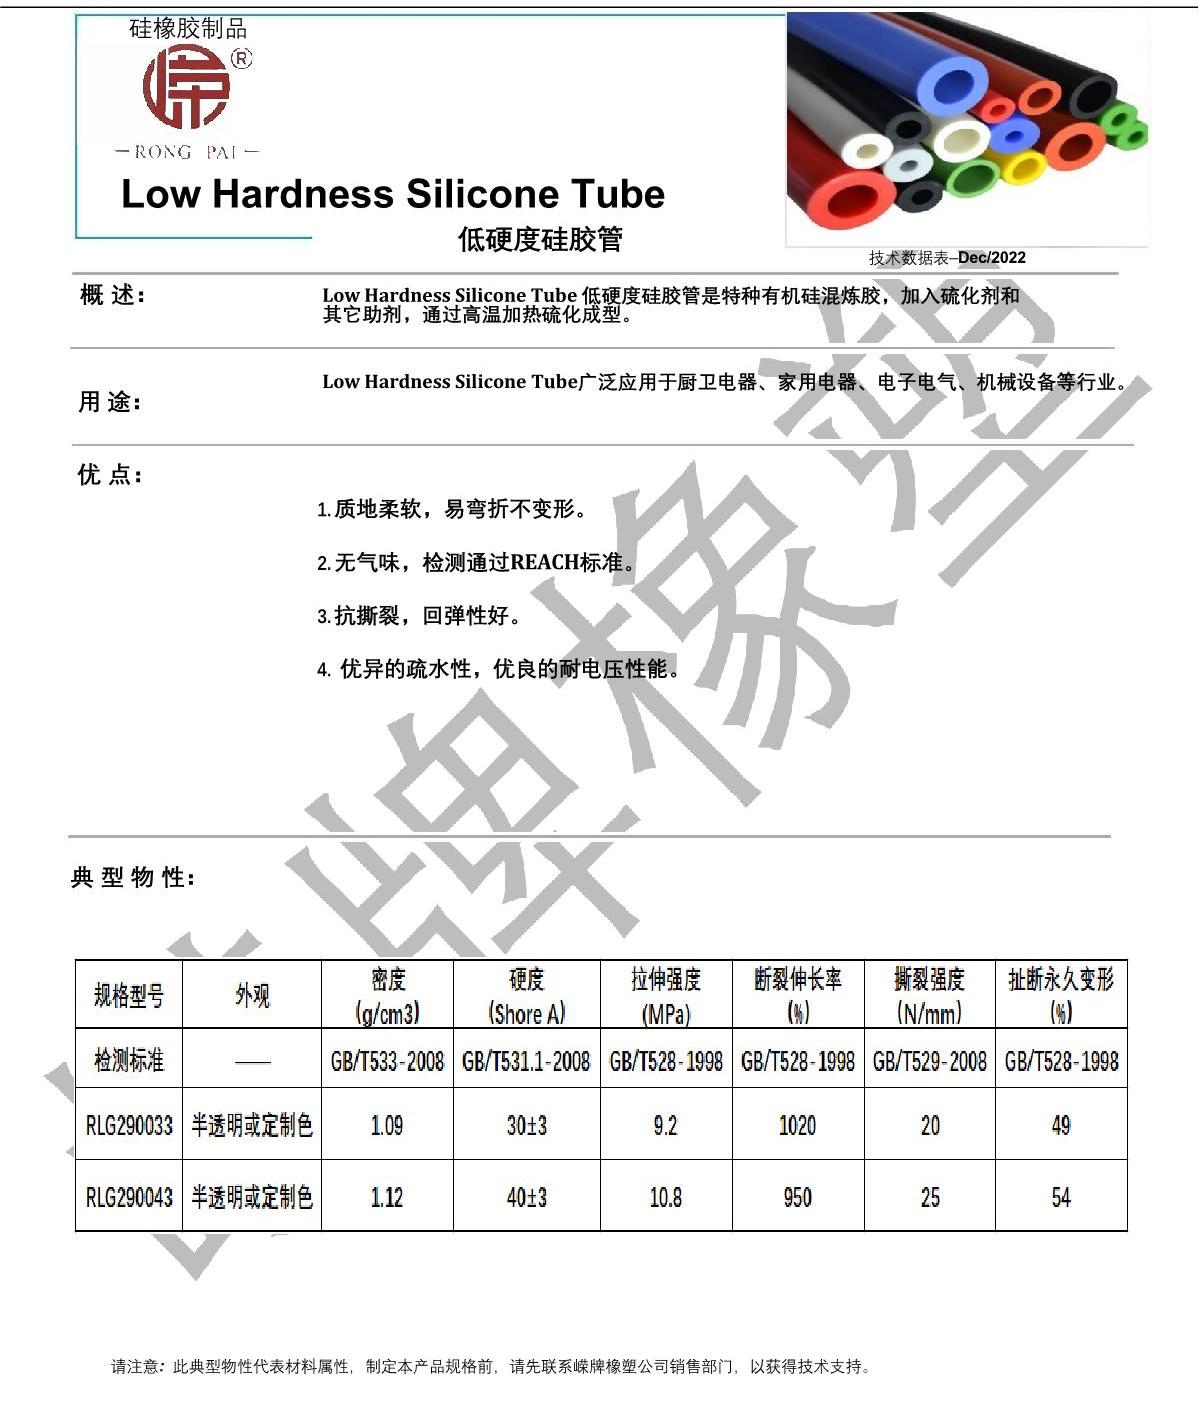 低硬度硅膠管產品說明_1.JPG